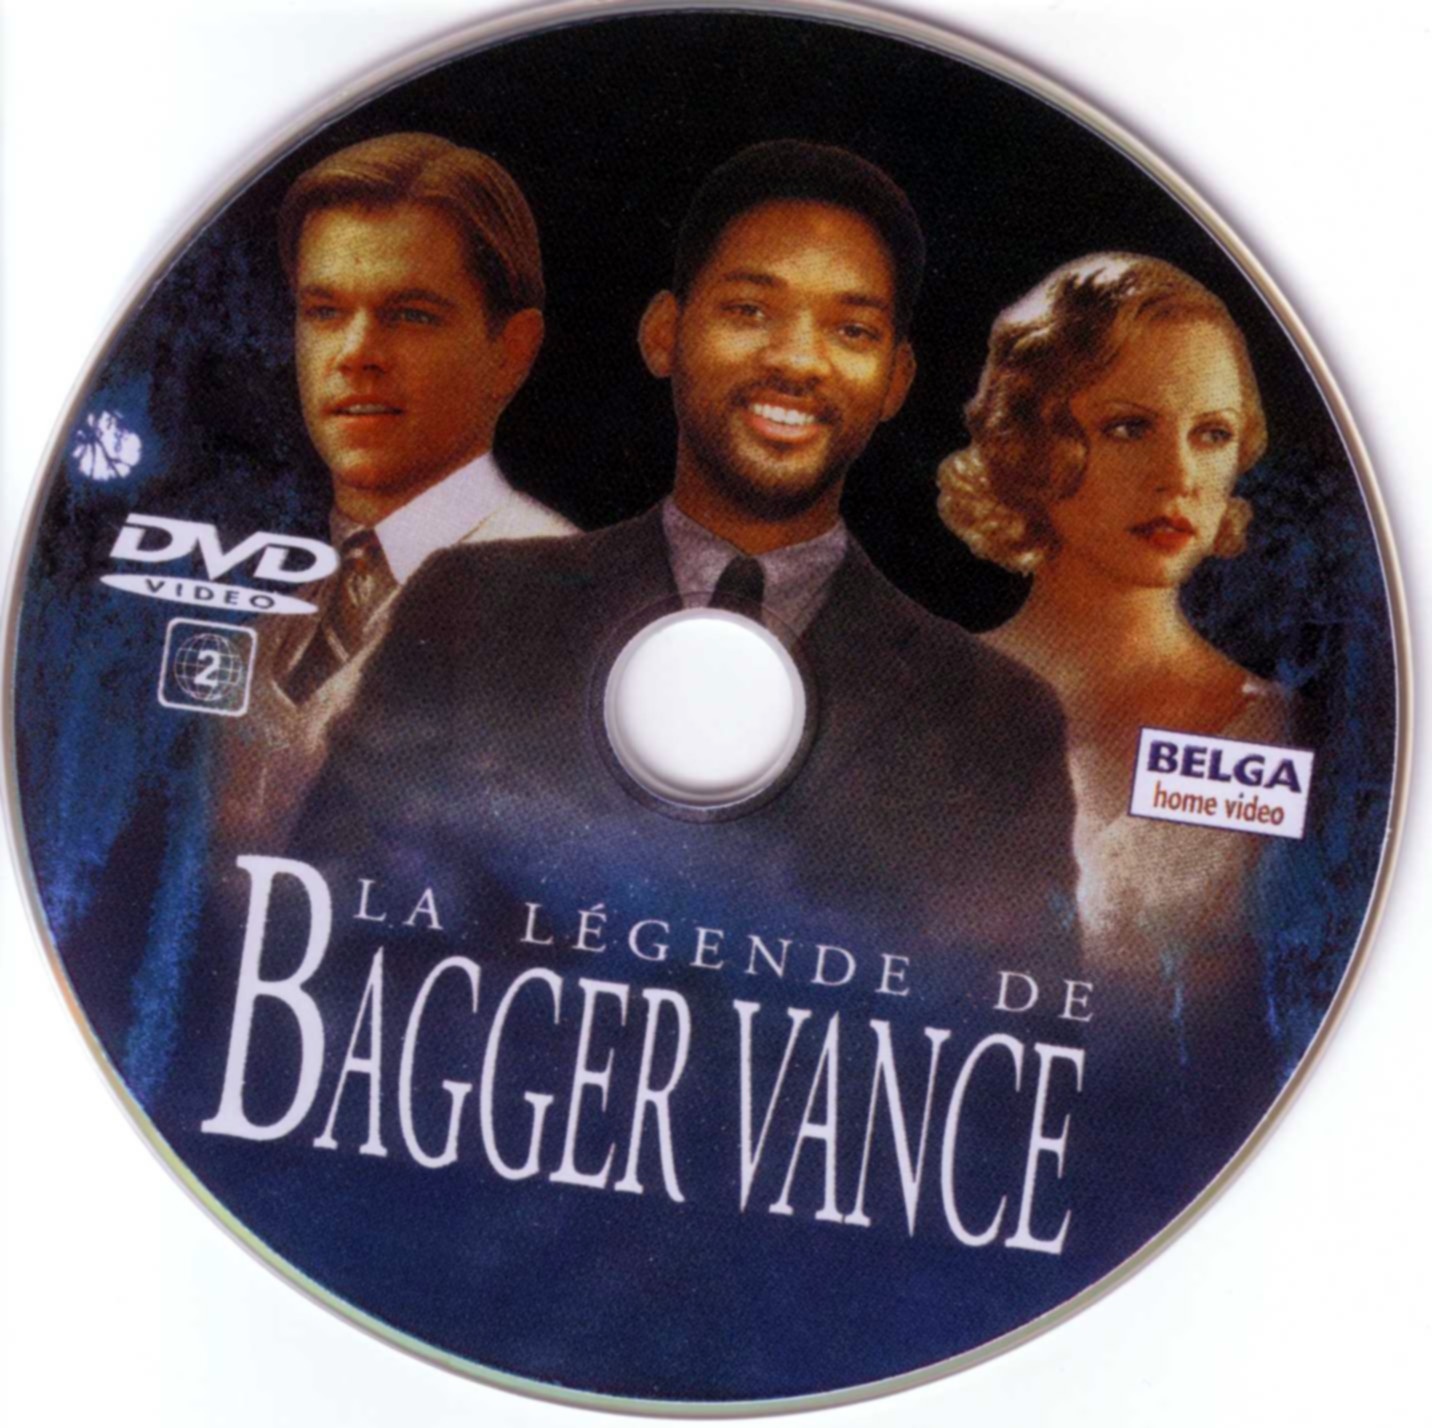 La legende de Bagger Vance